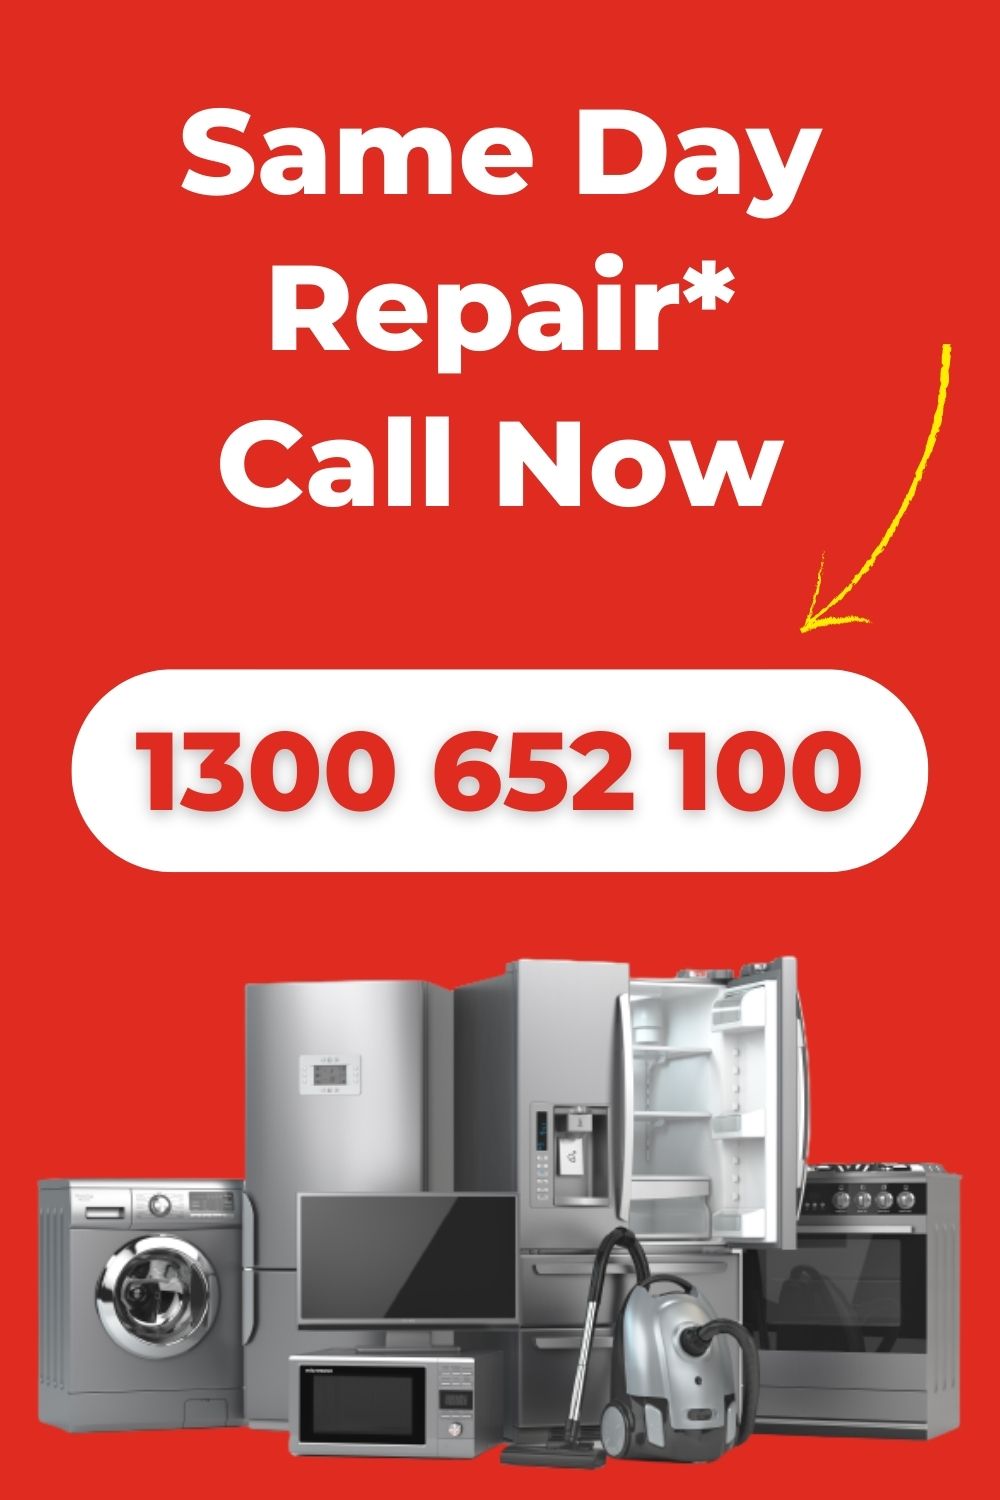 NWAR Appliance Repair Australia